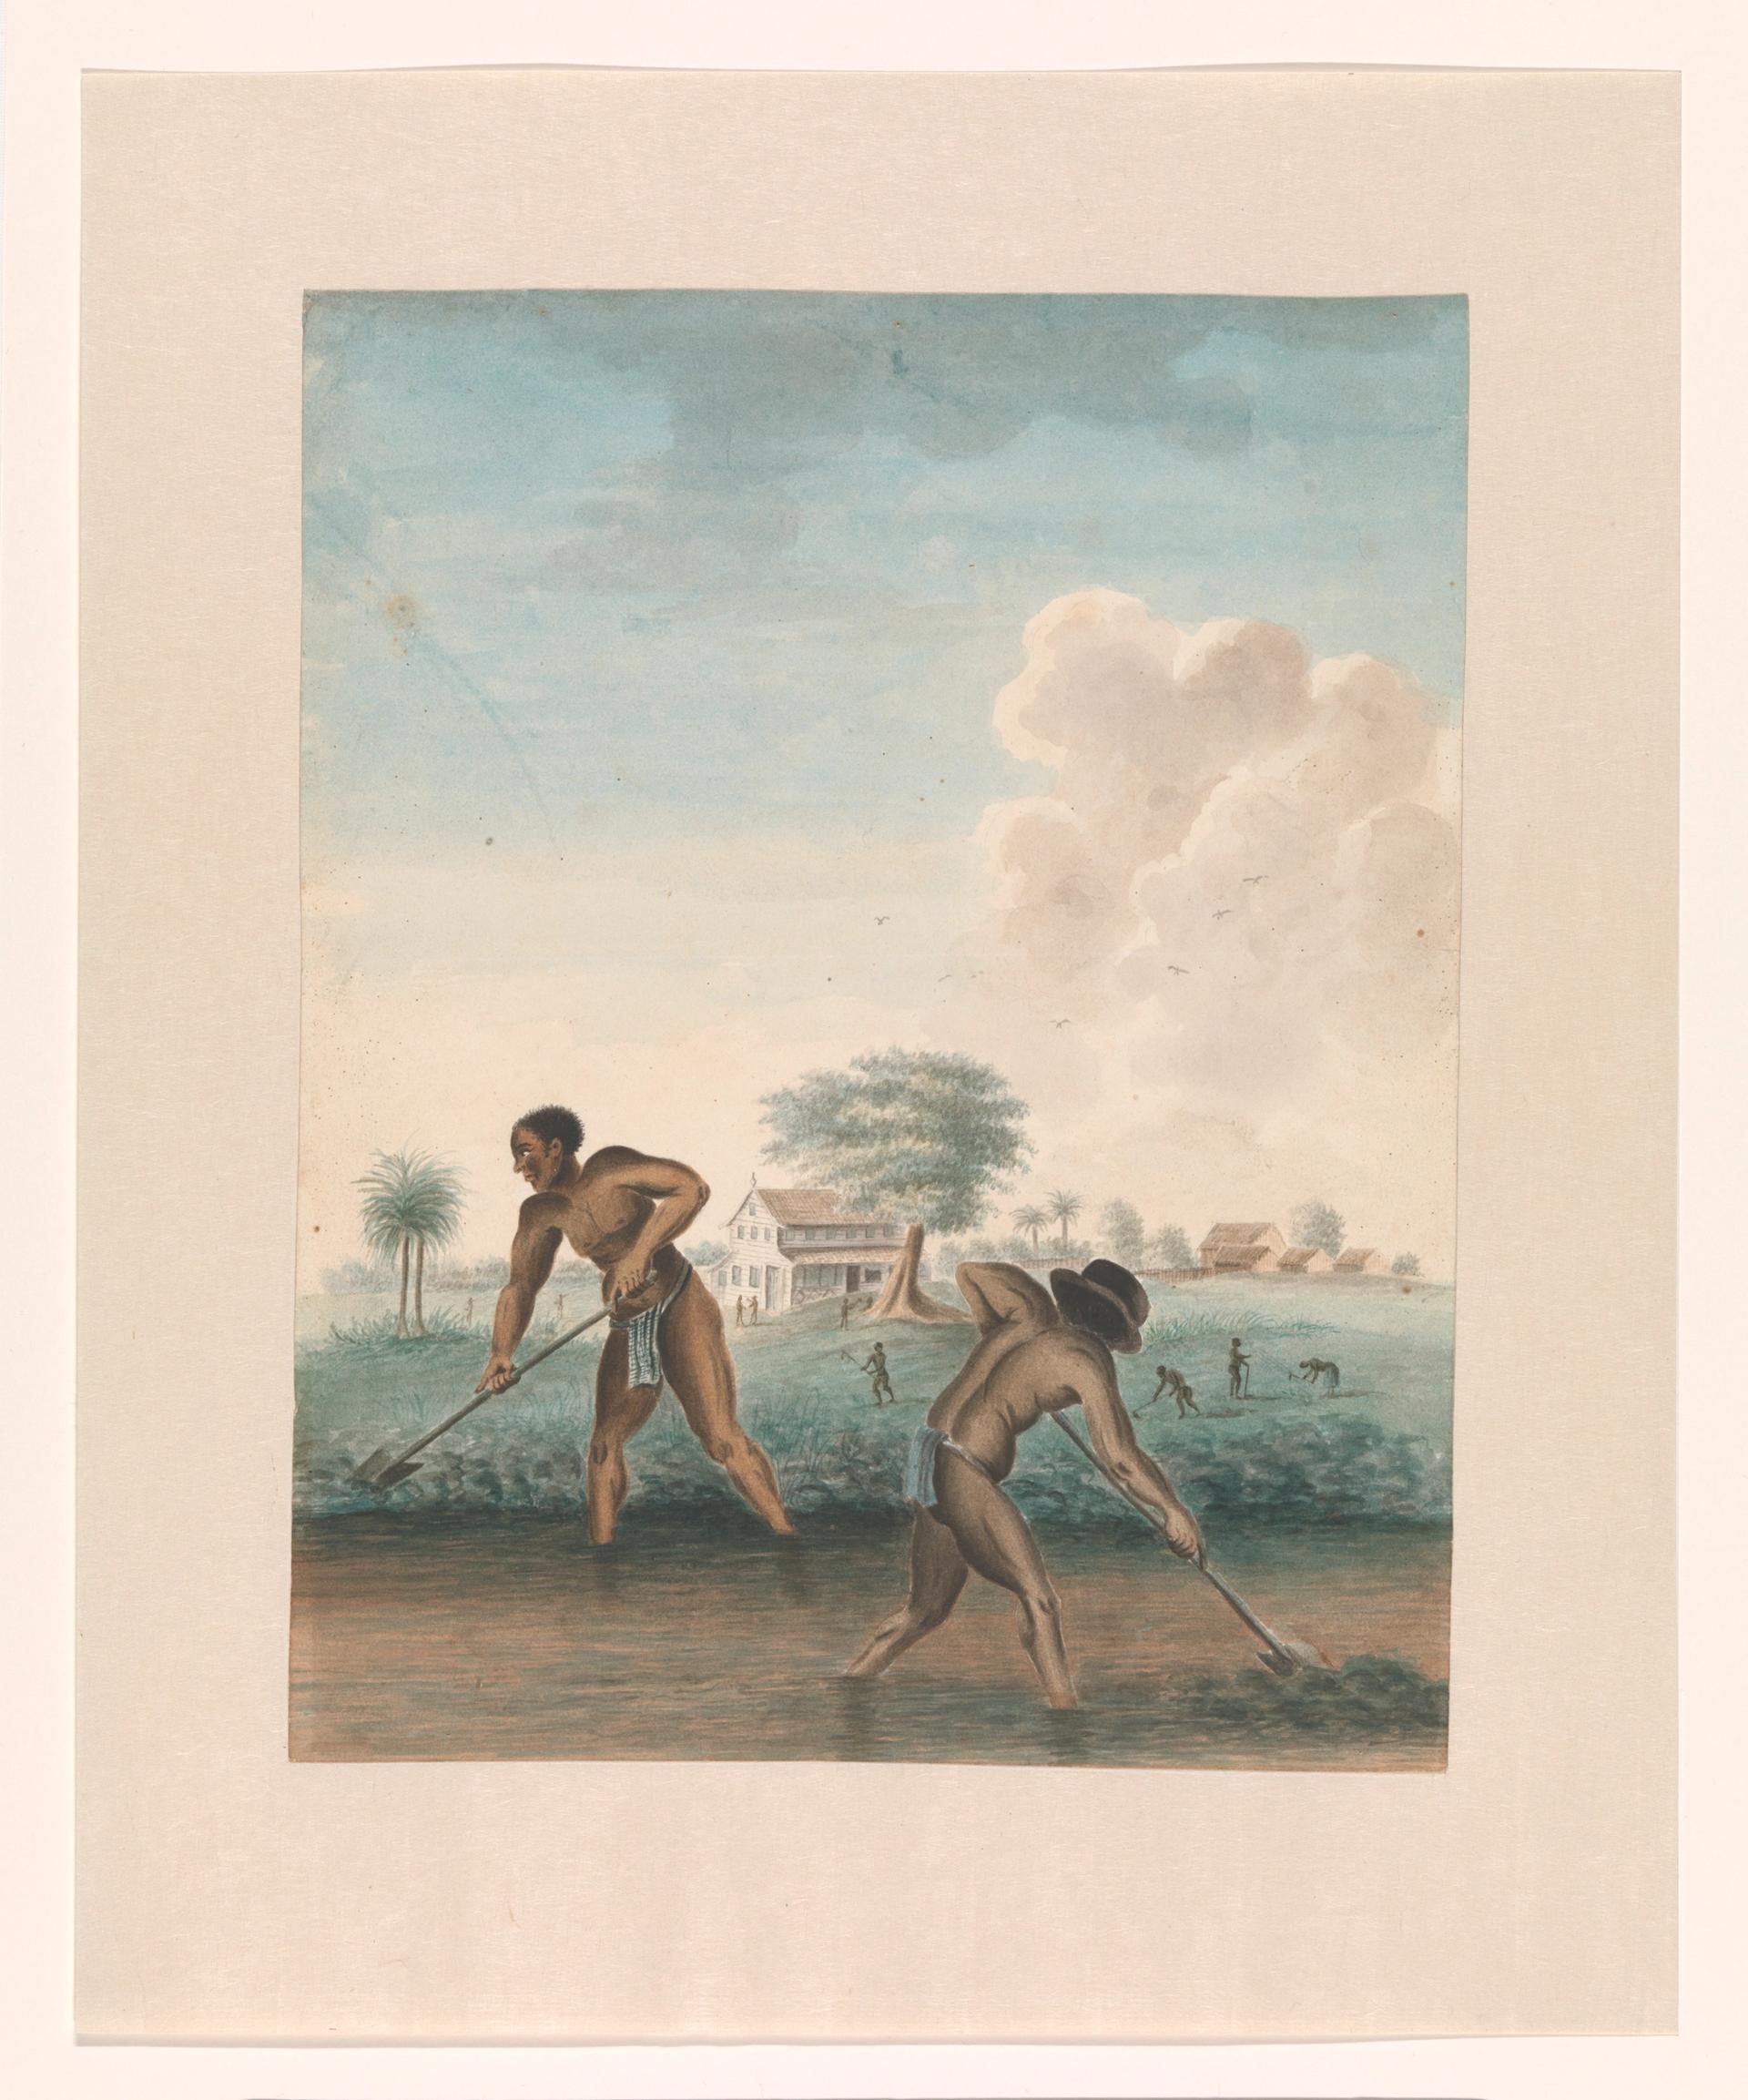 一位不知名的艺术家(大约1850年)在田地里劳作的奴隶，由荷兰国立博物馆提供。在Johan Huizinga Fonds/ rijkmuseum Fonds的支持下购买